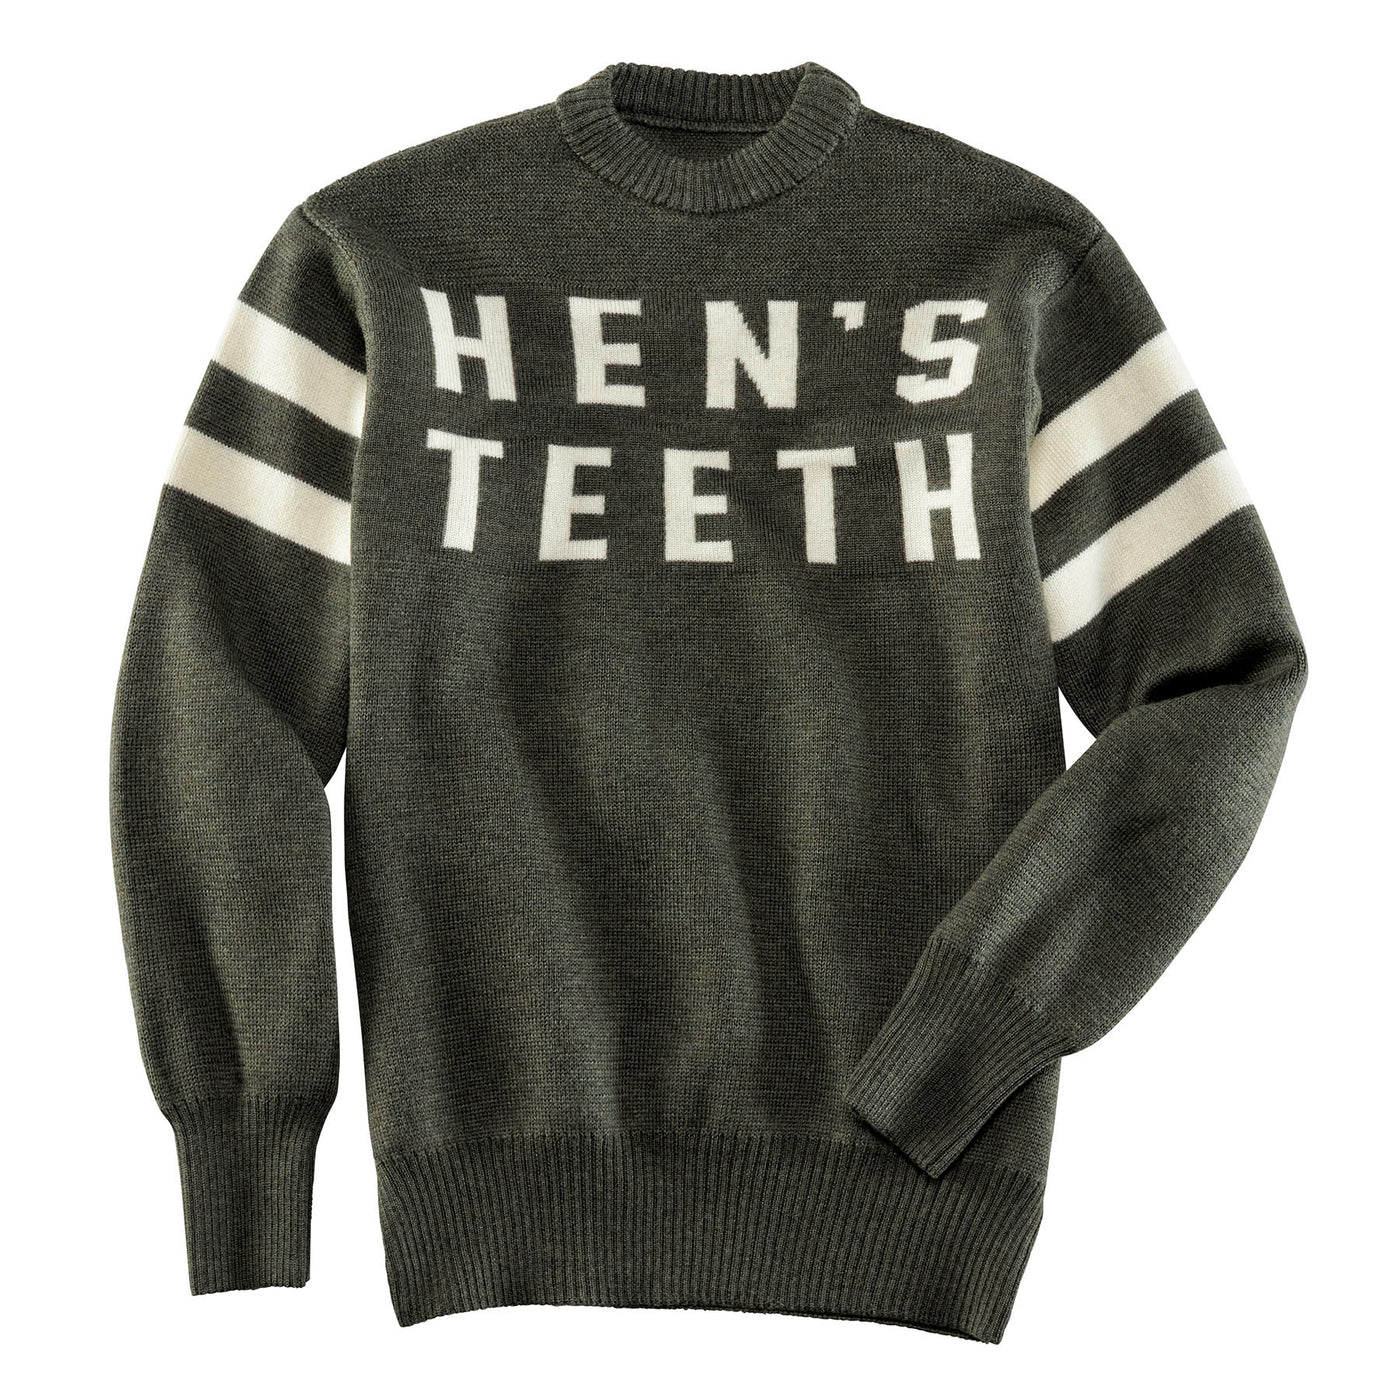 Hen's Teeth Sweater Knitwear Green